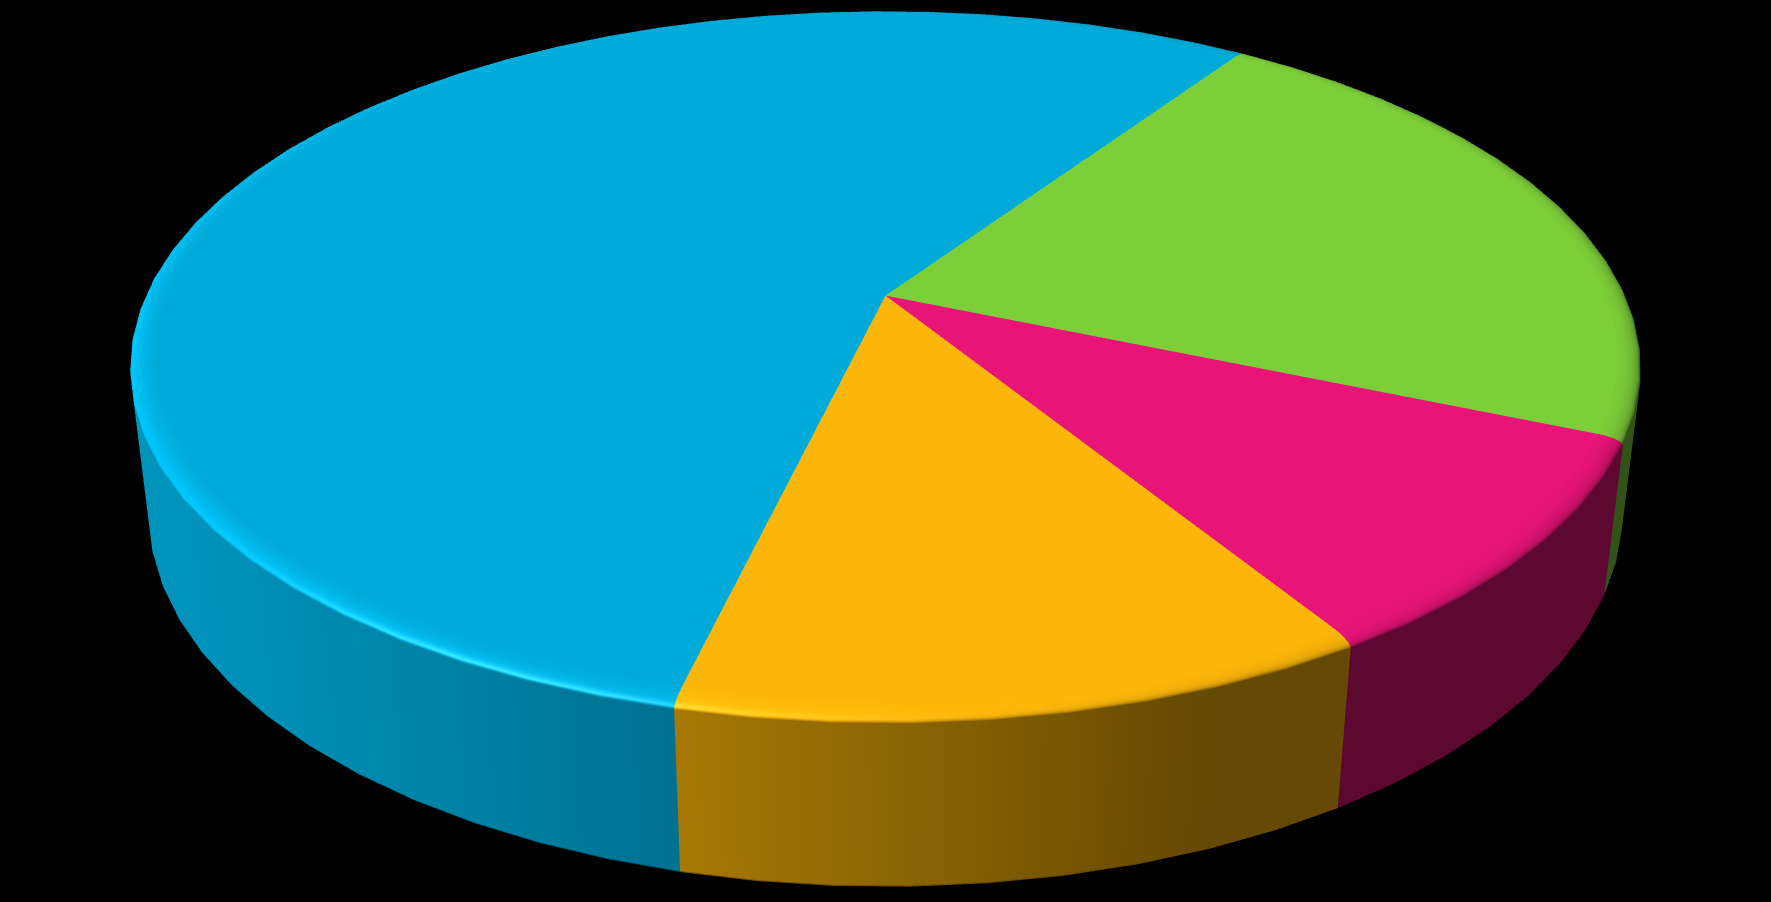 A szolgáltatások számának megoszlása ellátási formánként (2015